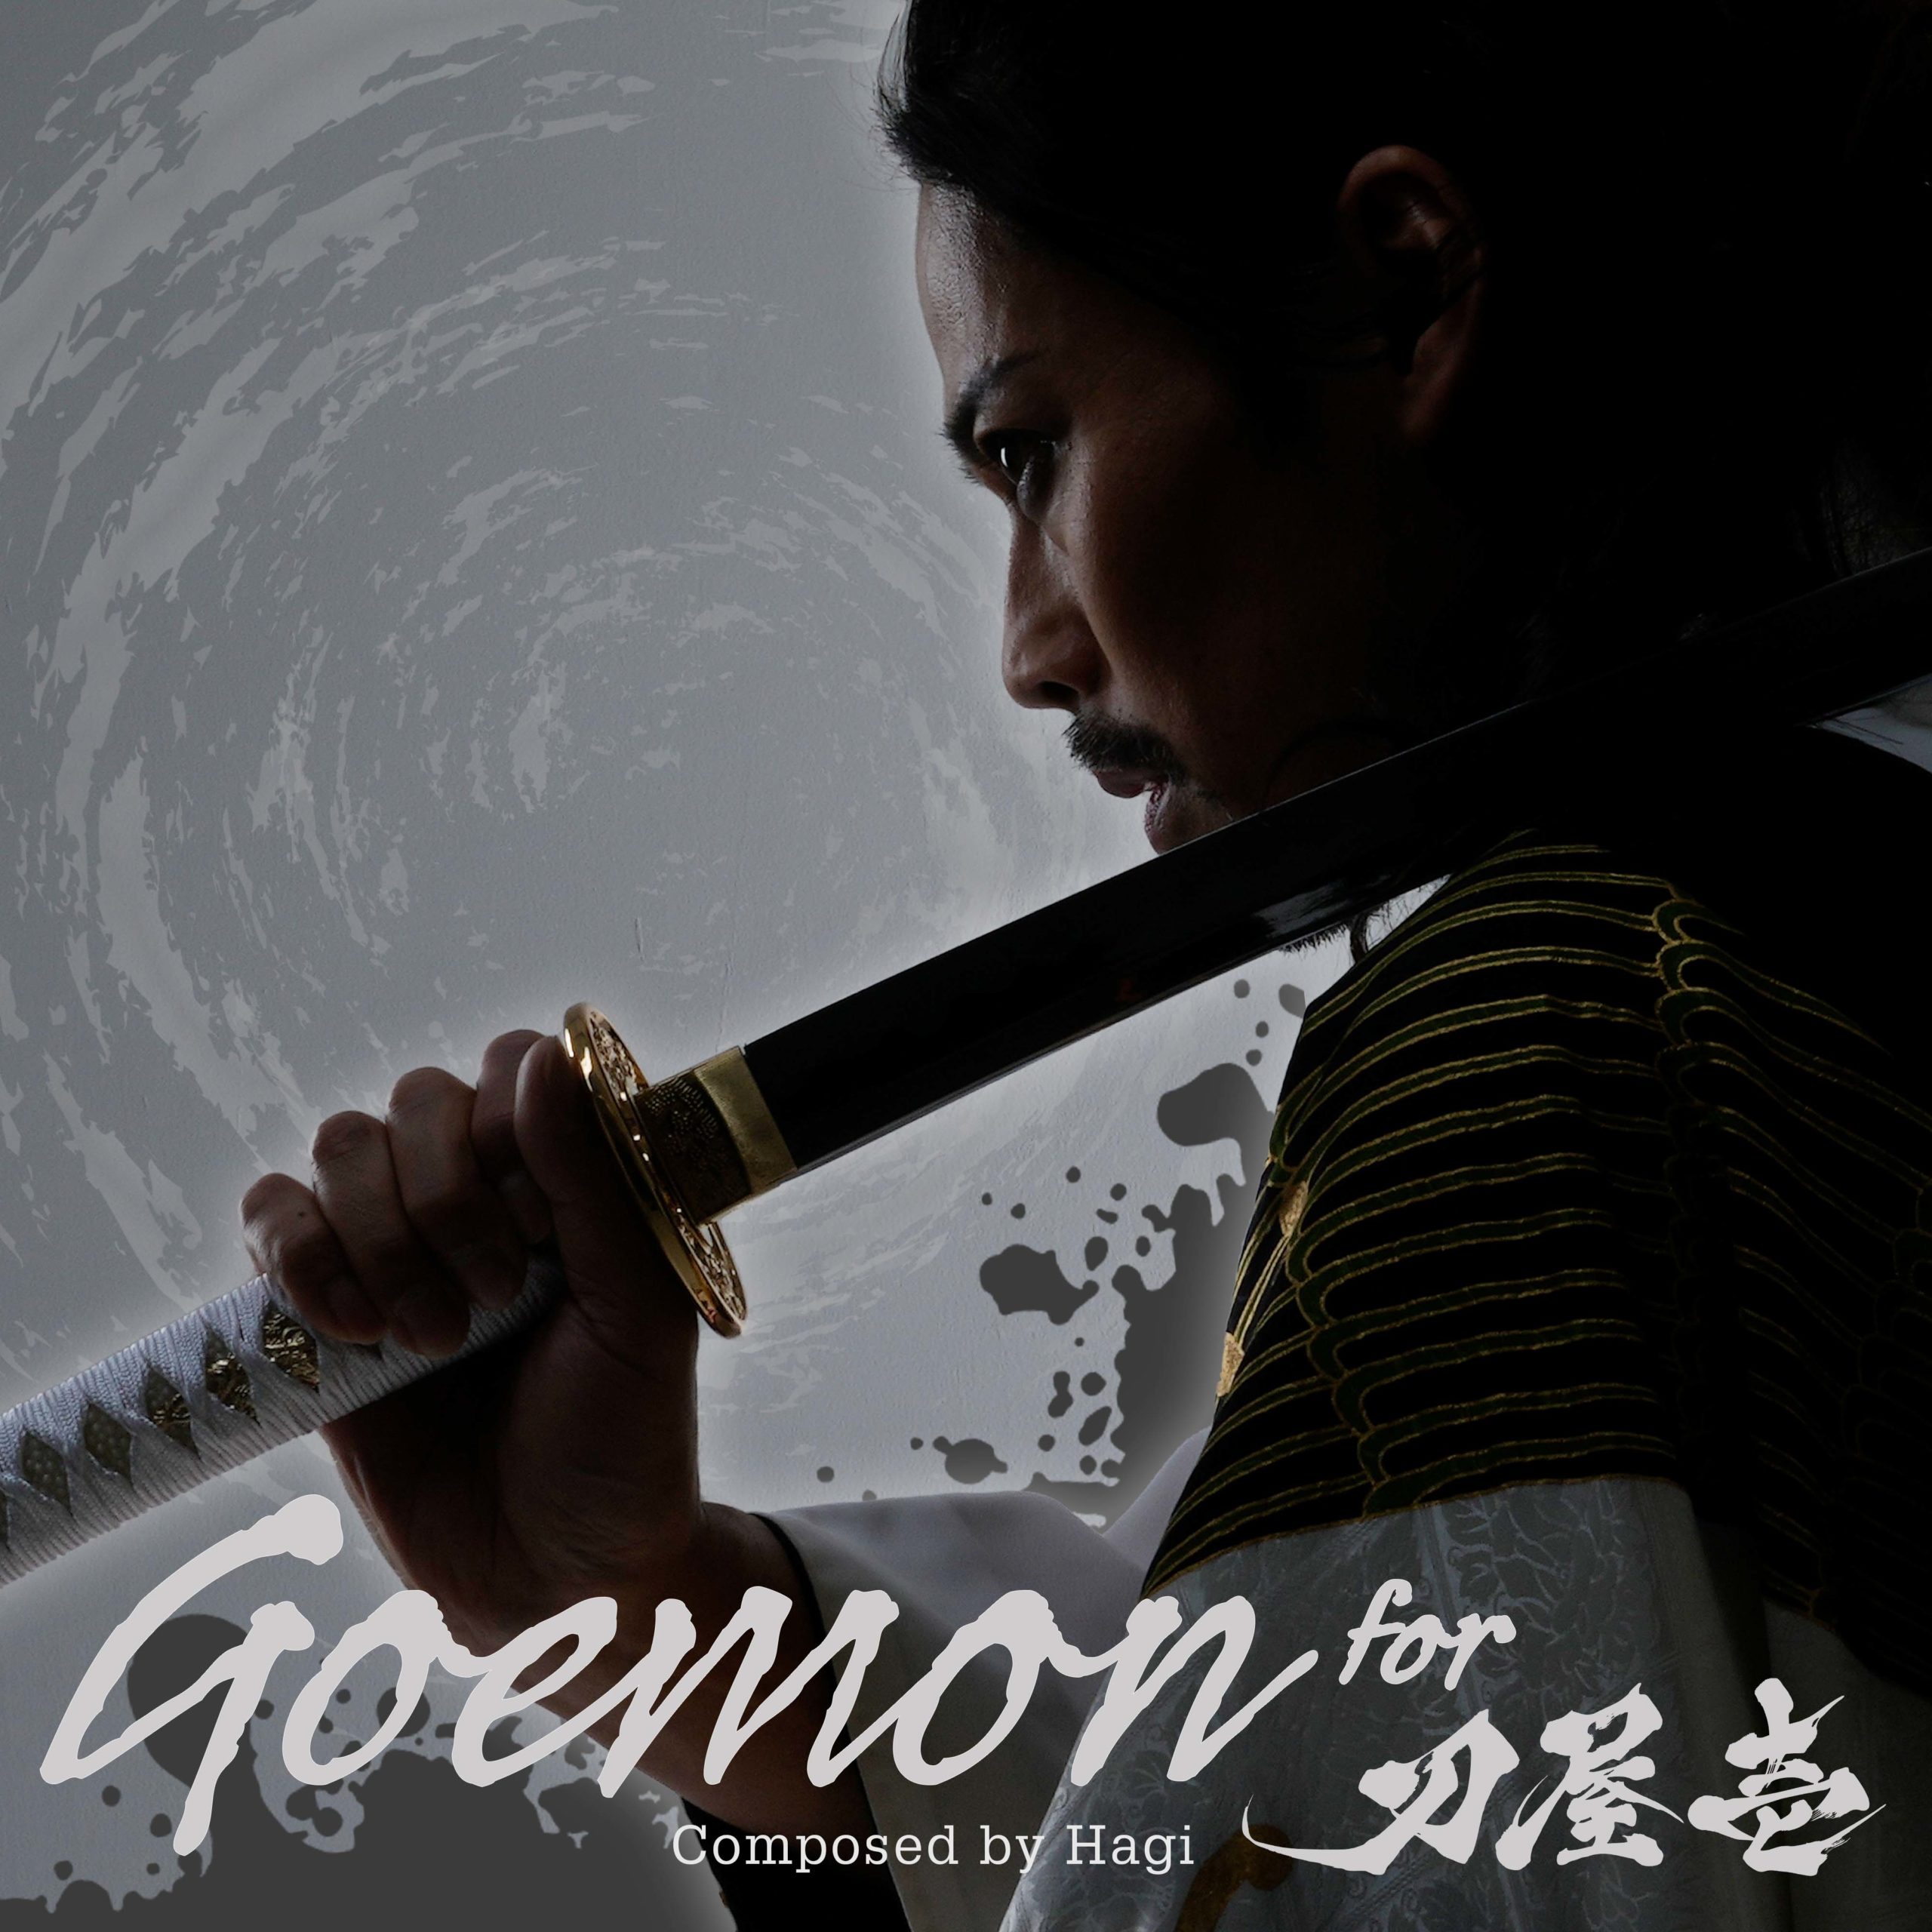 Goemon for 刀屋壱